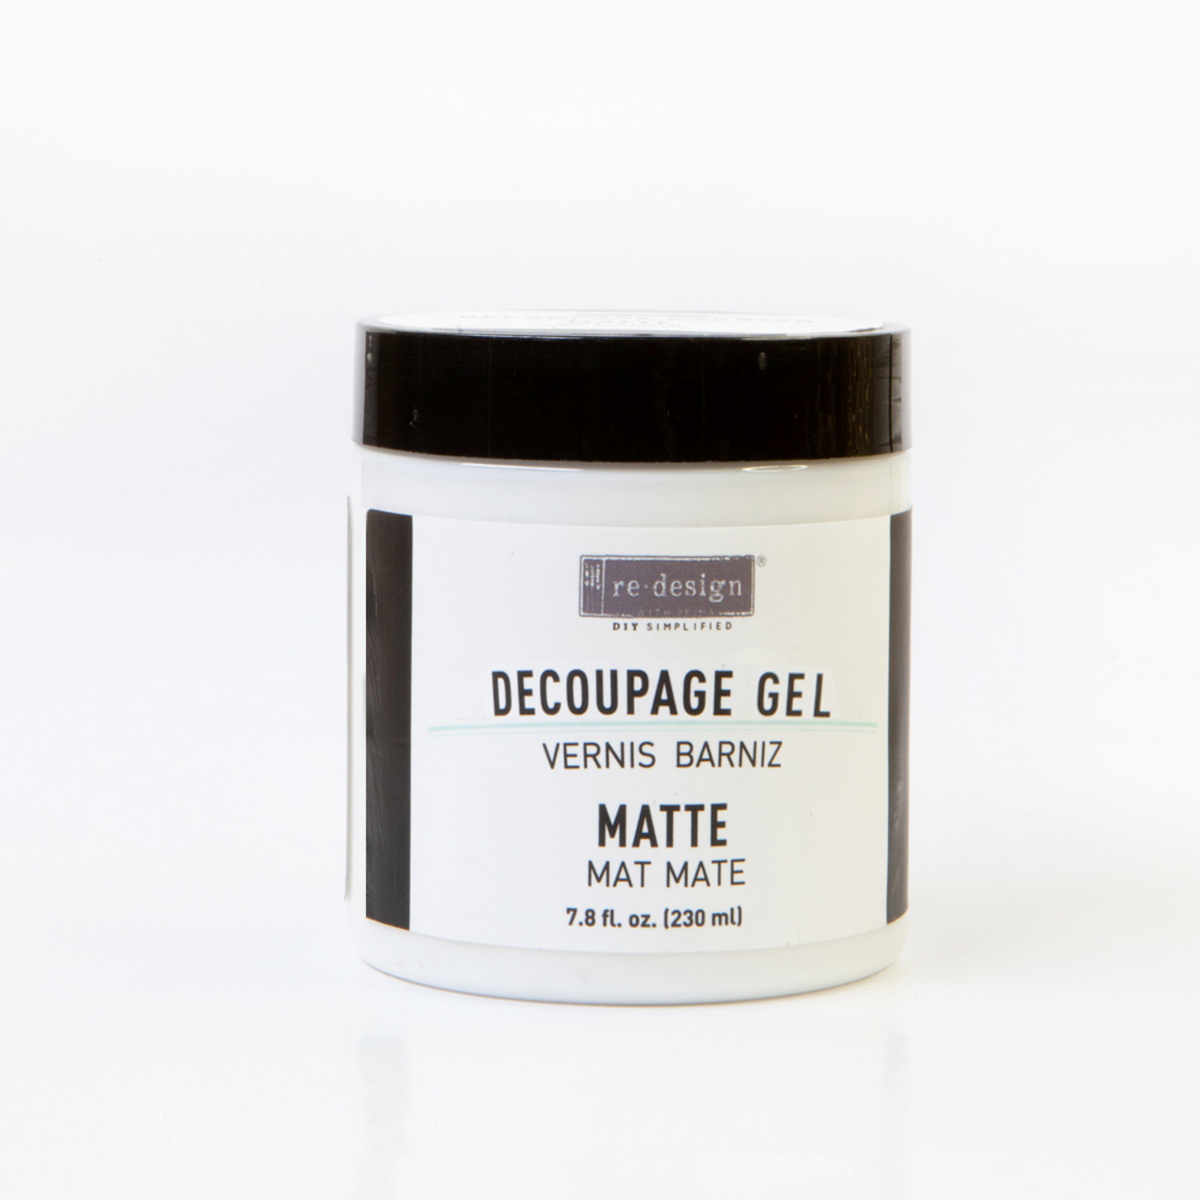 Decoupage Gel Matte – 1 Jar, 230ml